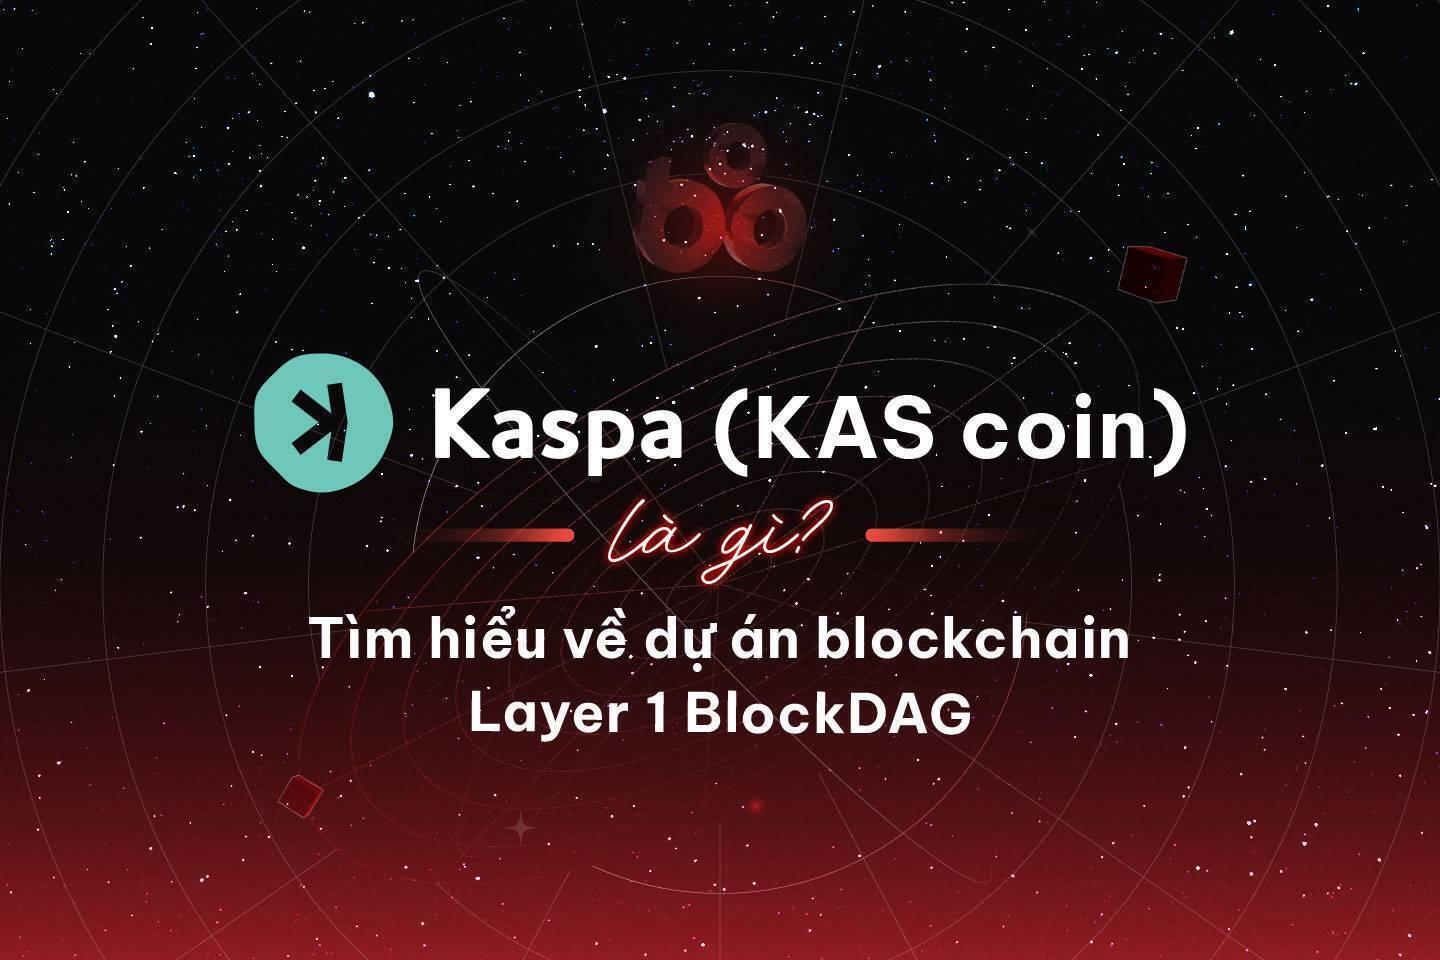 kaspa-kas-coin-la-gi-tim-hieu-ve-du-an-blockchain-layer-1-blockdag